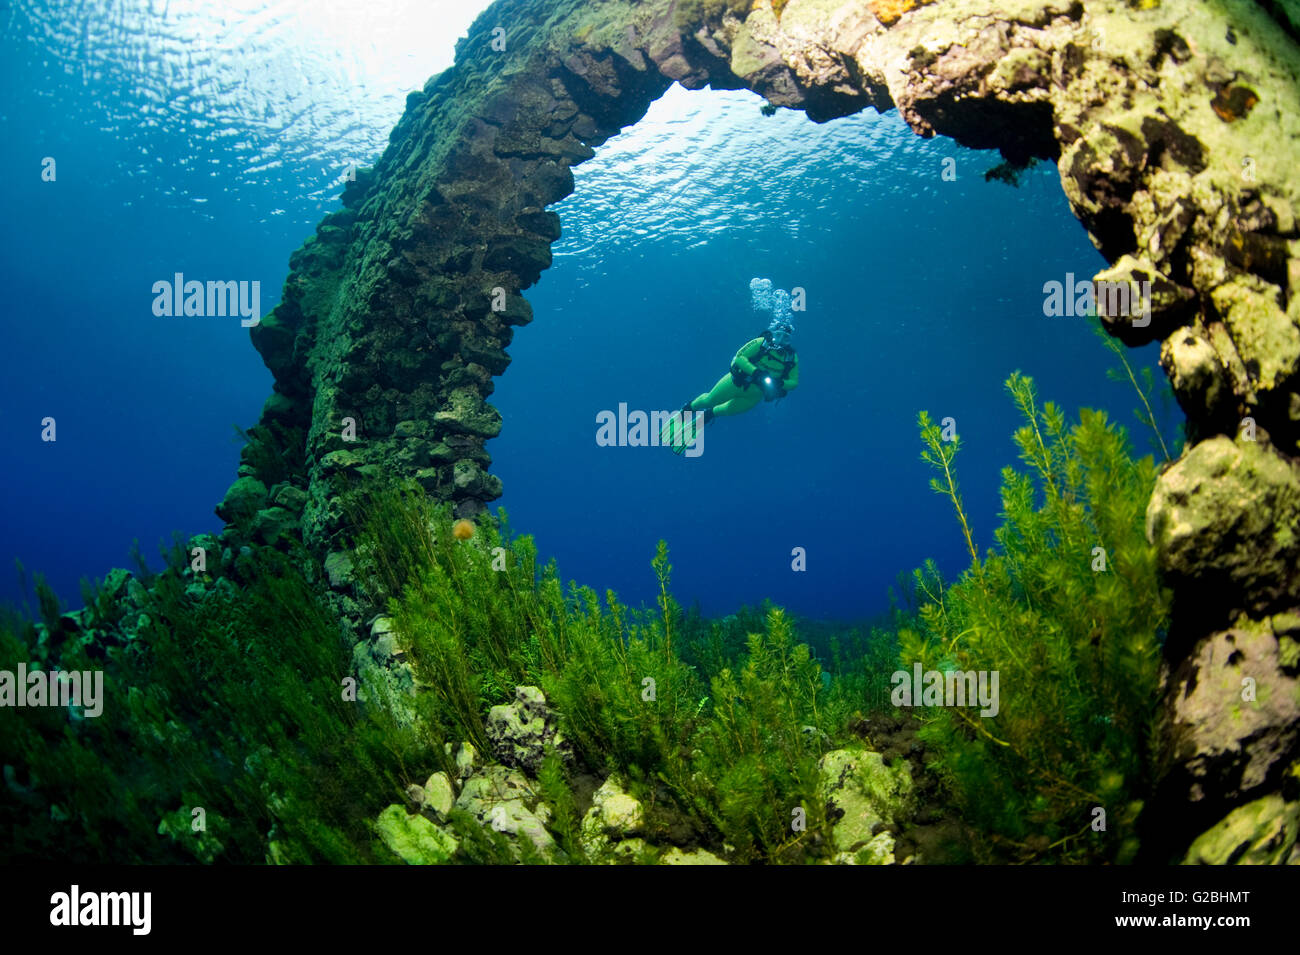 Scuba diver in the underwater world of the lake Lago Capo d'Acqua,  Capistrano, L'Aquila, Italy Stock Photo - Alamy